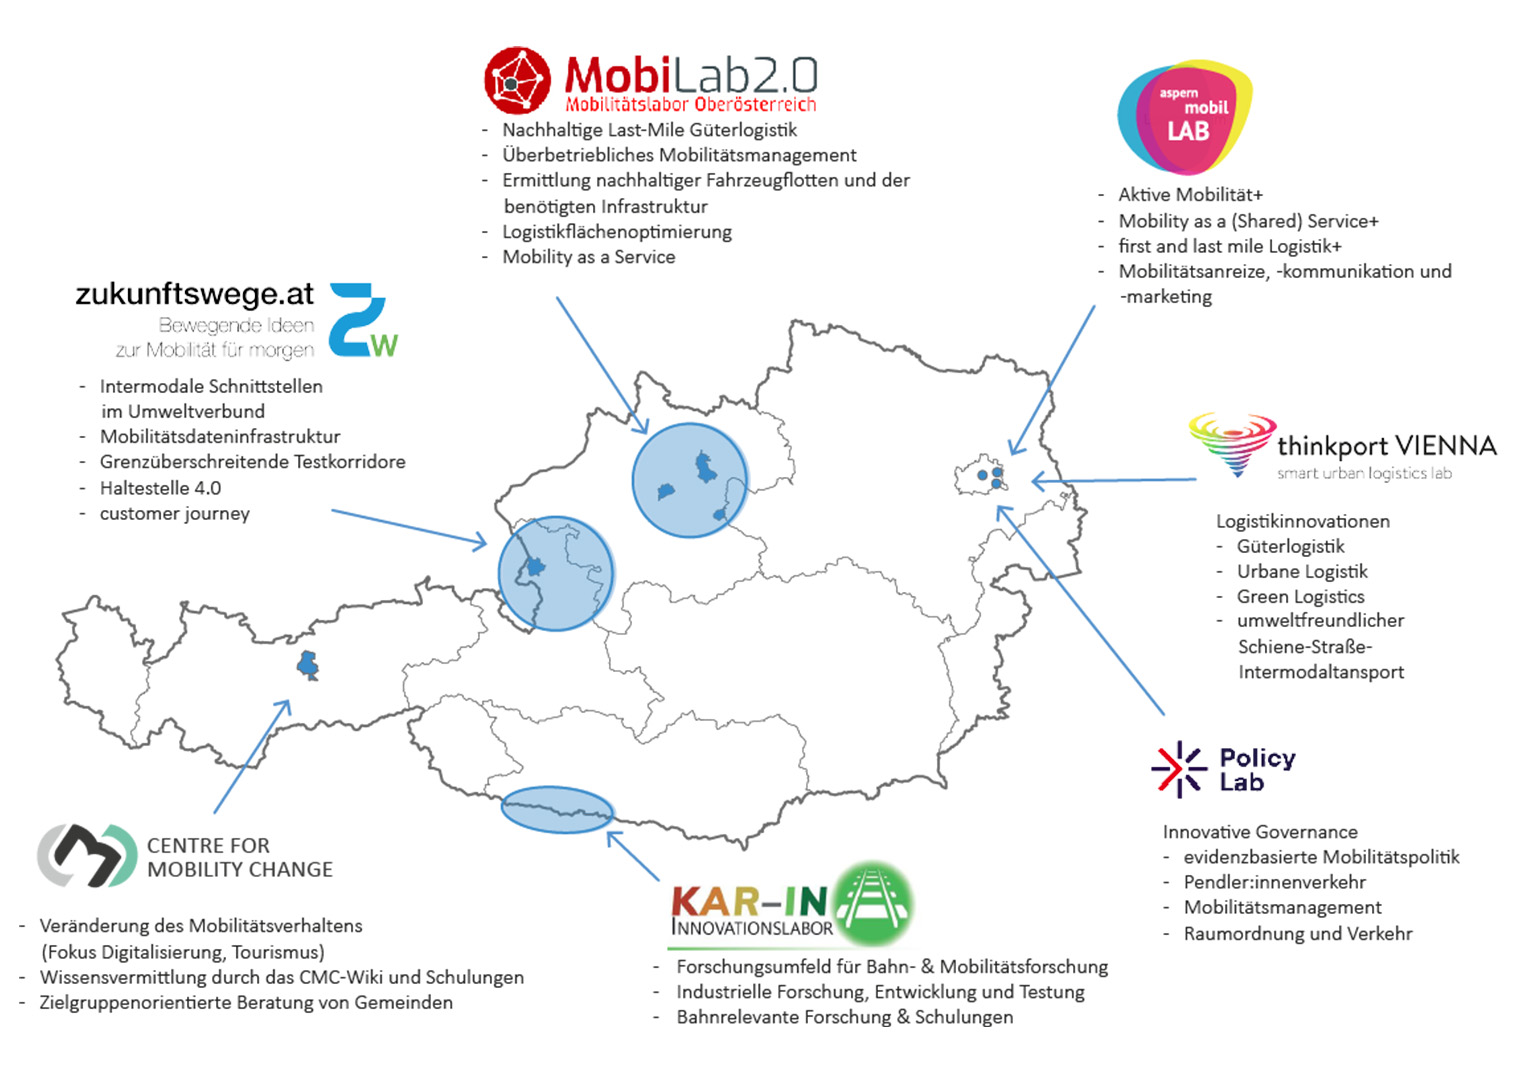 Das Bild zeigt eine Österreich Landkarte, in der die Mobilitätslabore, das Center for Mobility Change und das Policy Lab verortet sind. Außerdem werden die Themenschwerpunkte der einzelnen Mobilitätslabore beschrieben.